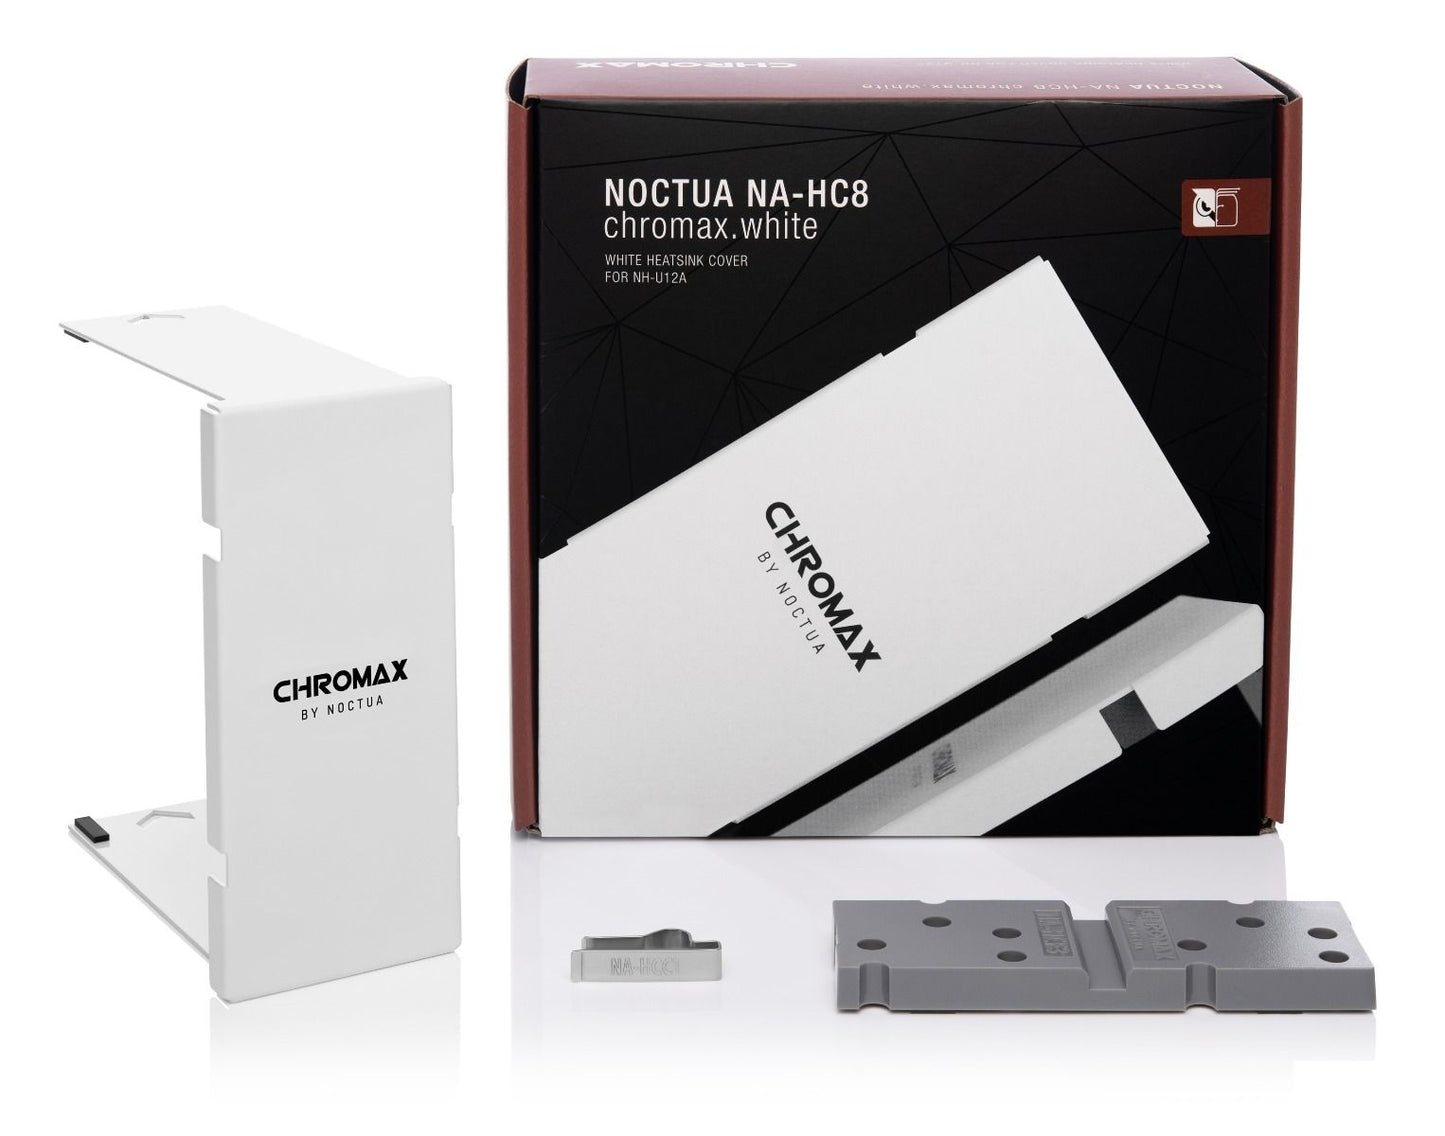 Noctua NA-HC8 Chromax White Heatsink Cover